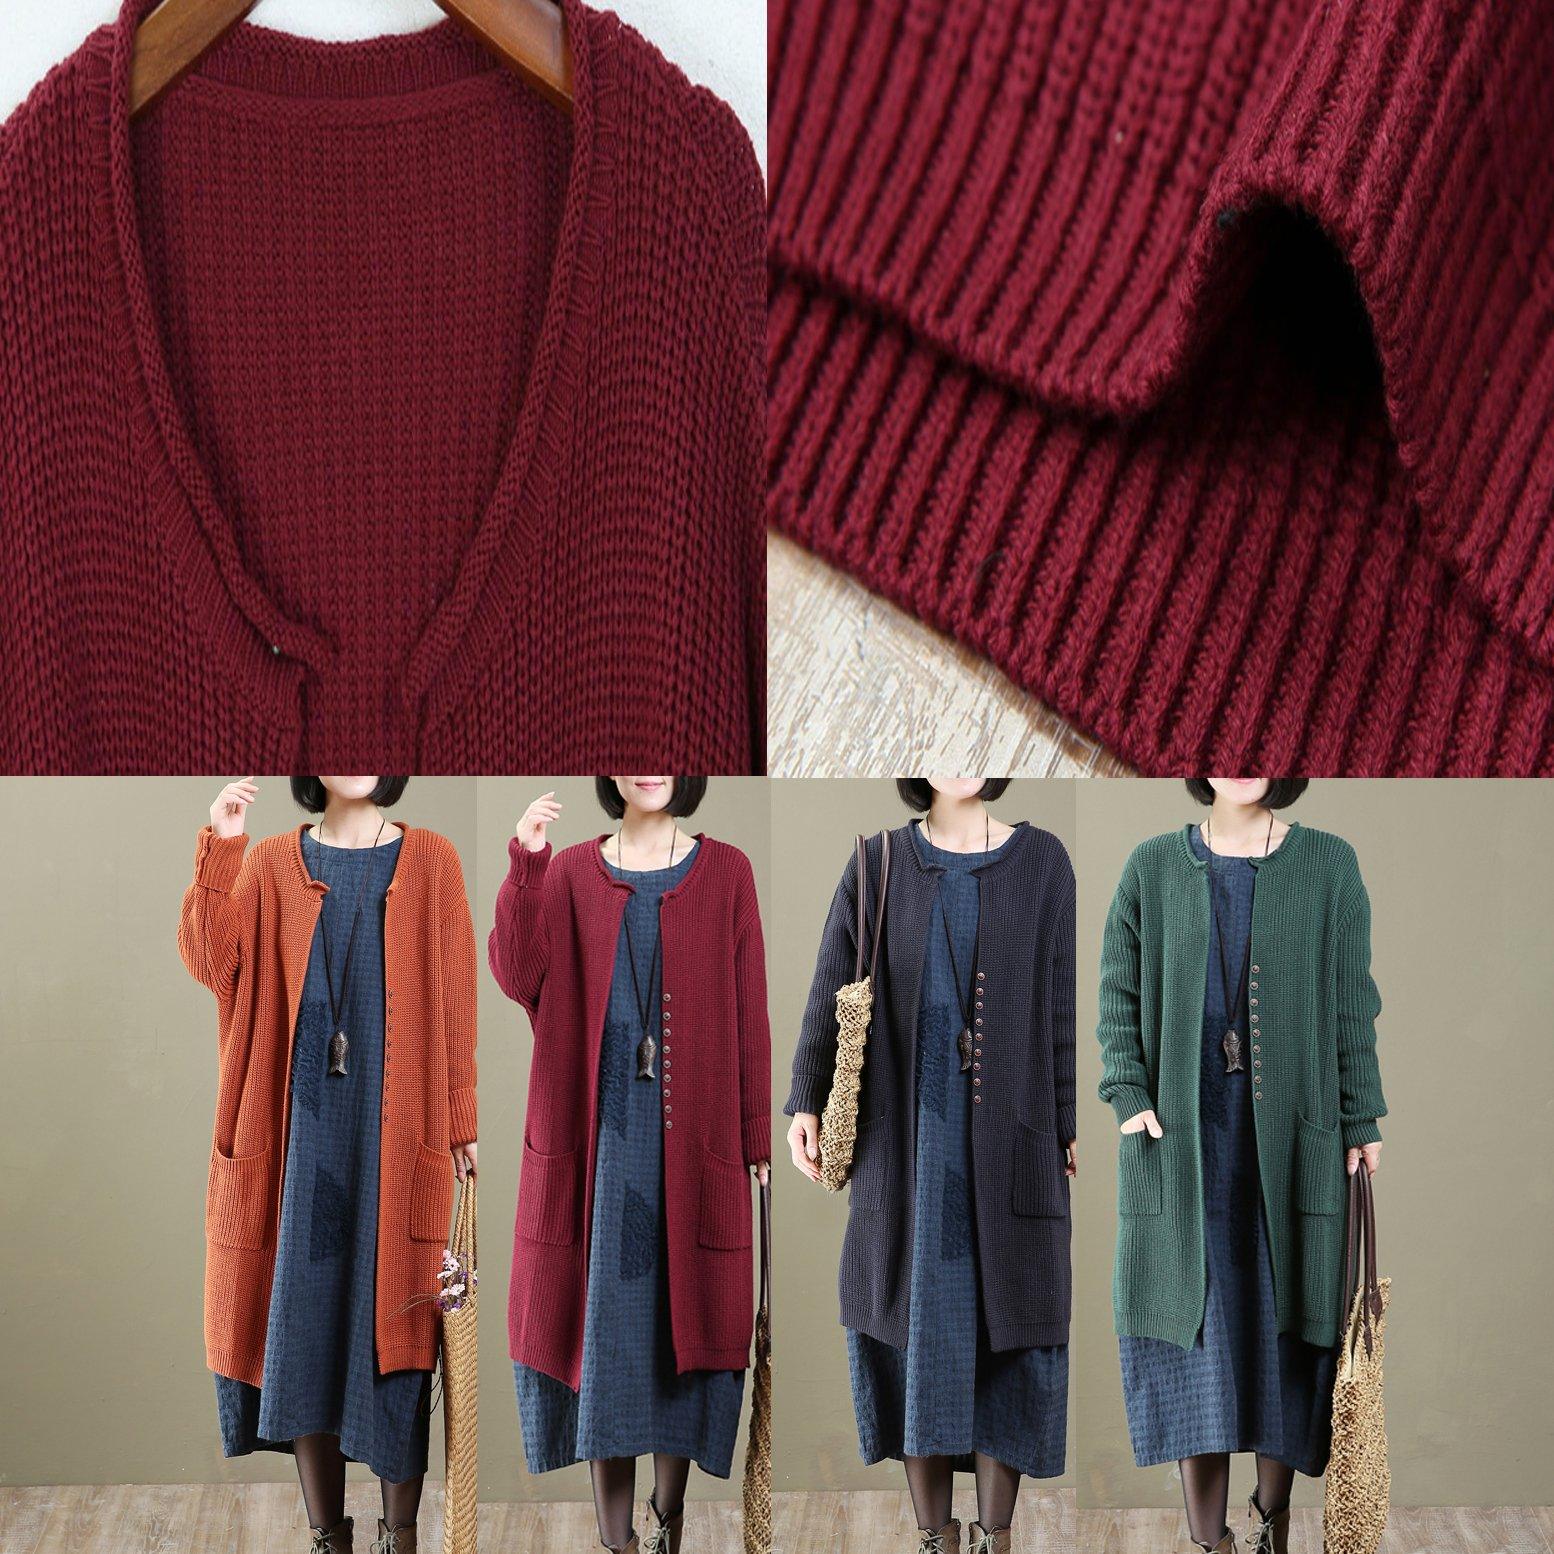 2021 spring orange knit cardigans long oversized sweater coats - Omychic